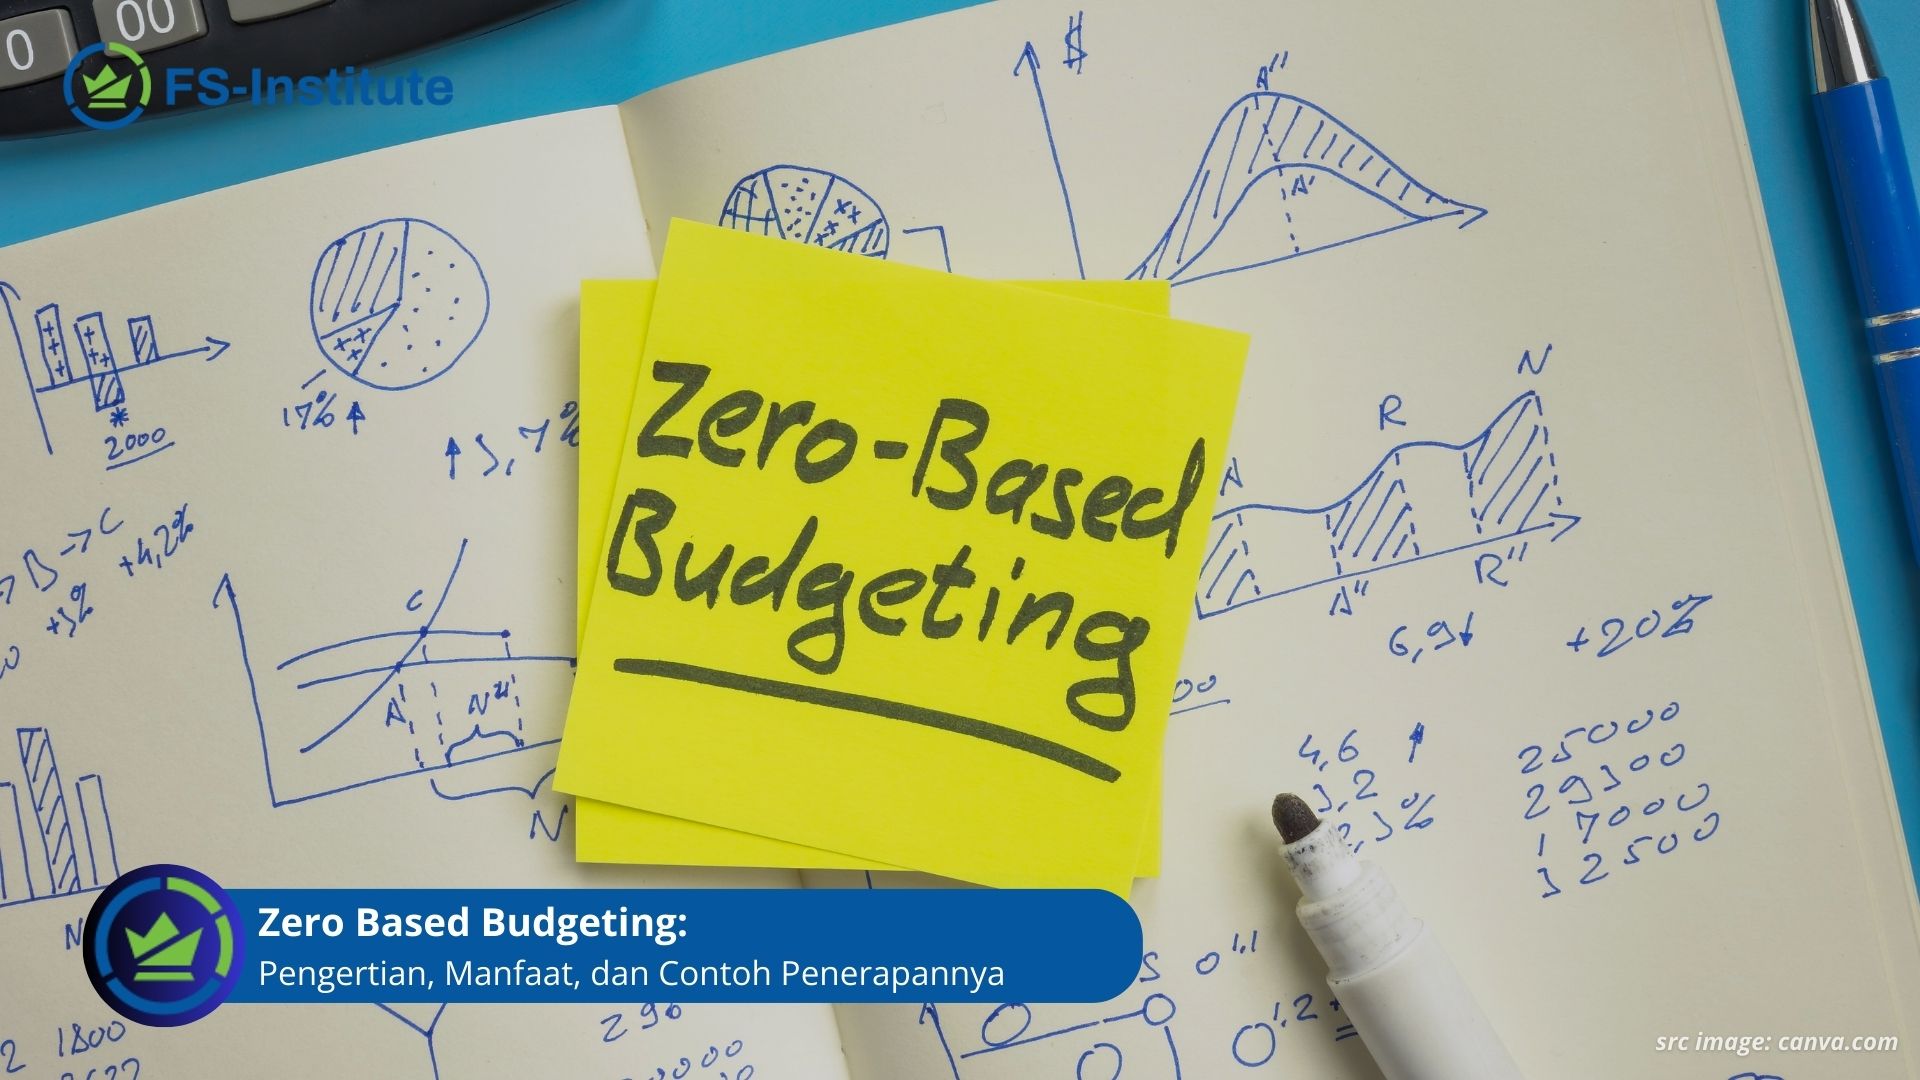 Zero Based Budgeting: Pengertian, Manfaat, dan Contoh Penerapannya